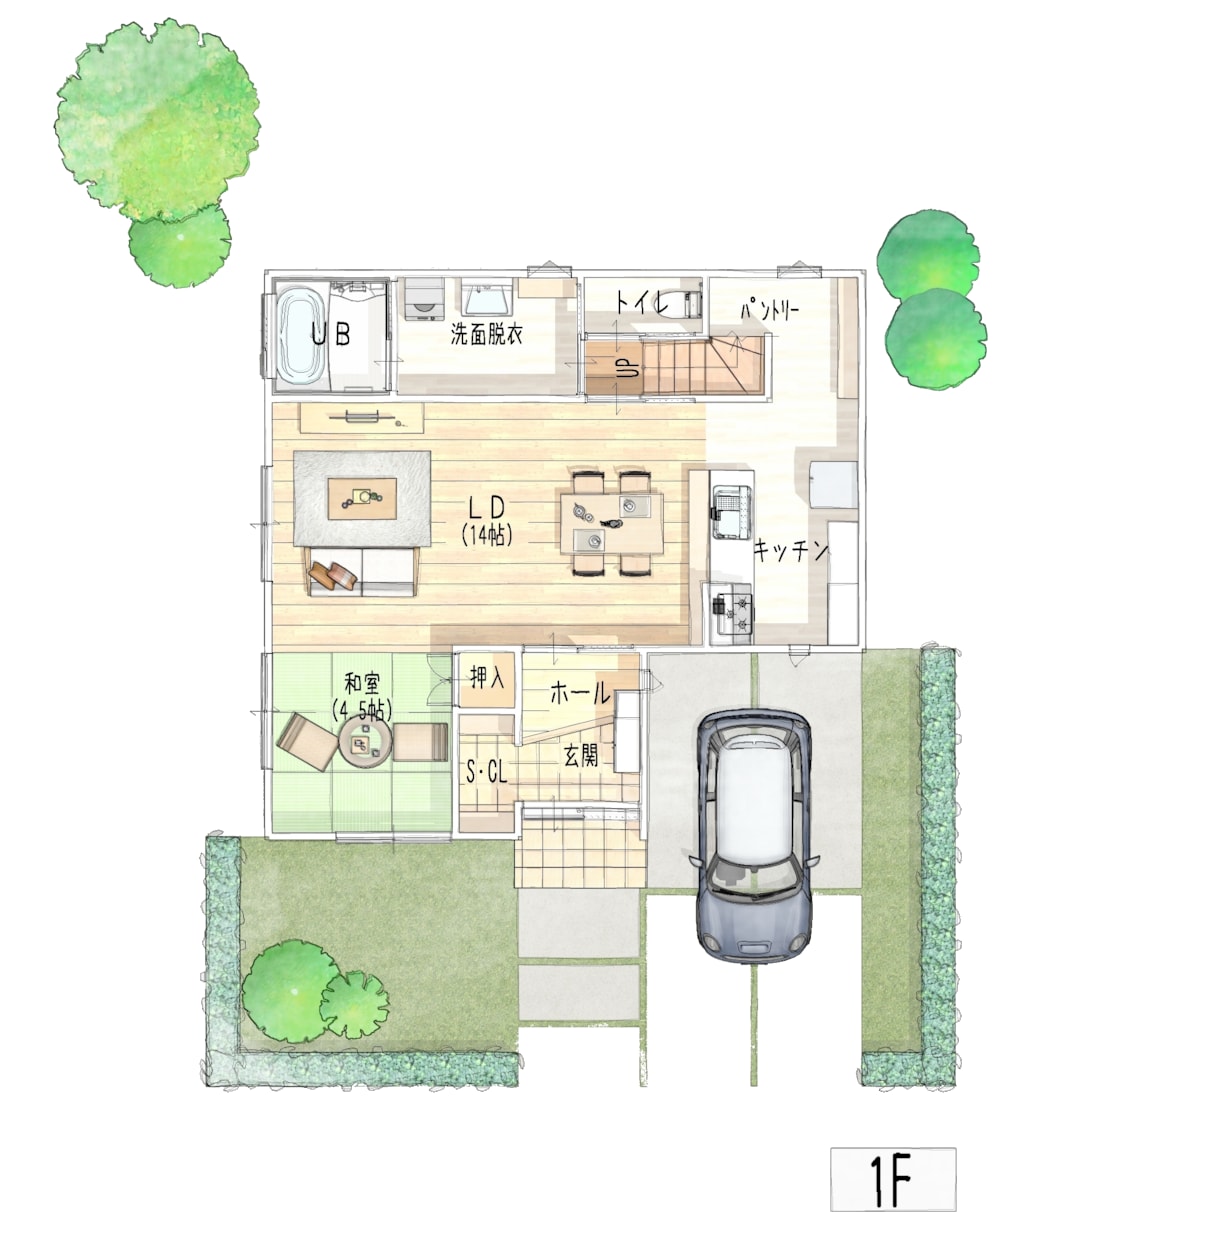 戸建て住宅の間取り図を手書き風にトレースします 建築CAD使用できれいに仕上げます。 イメージ1